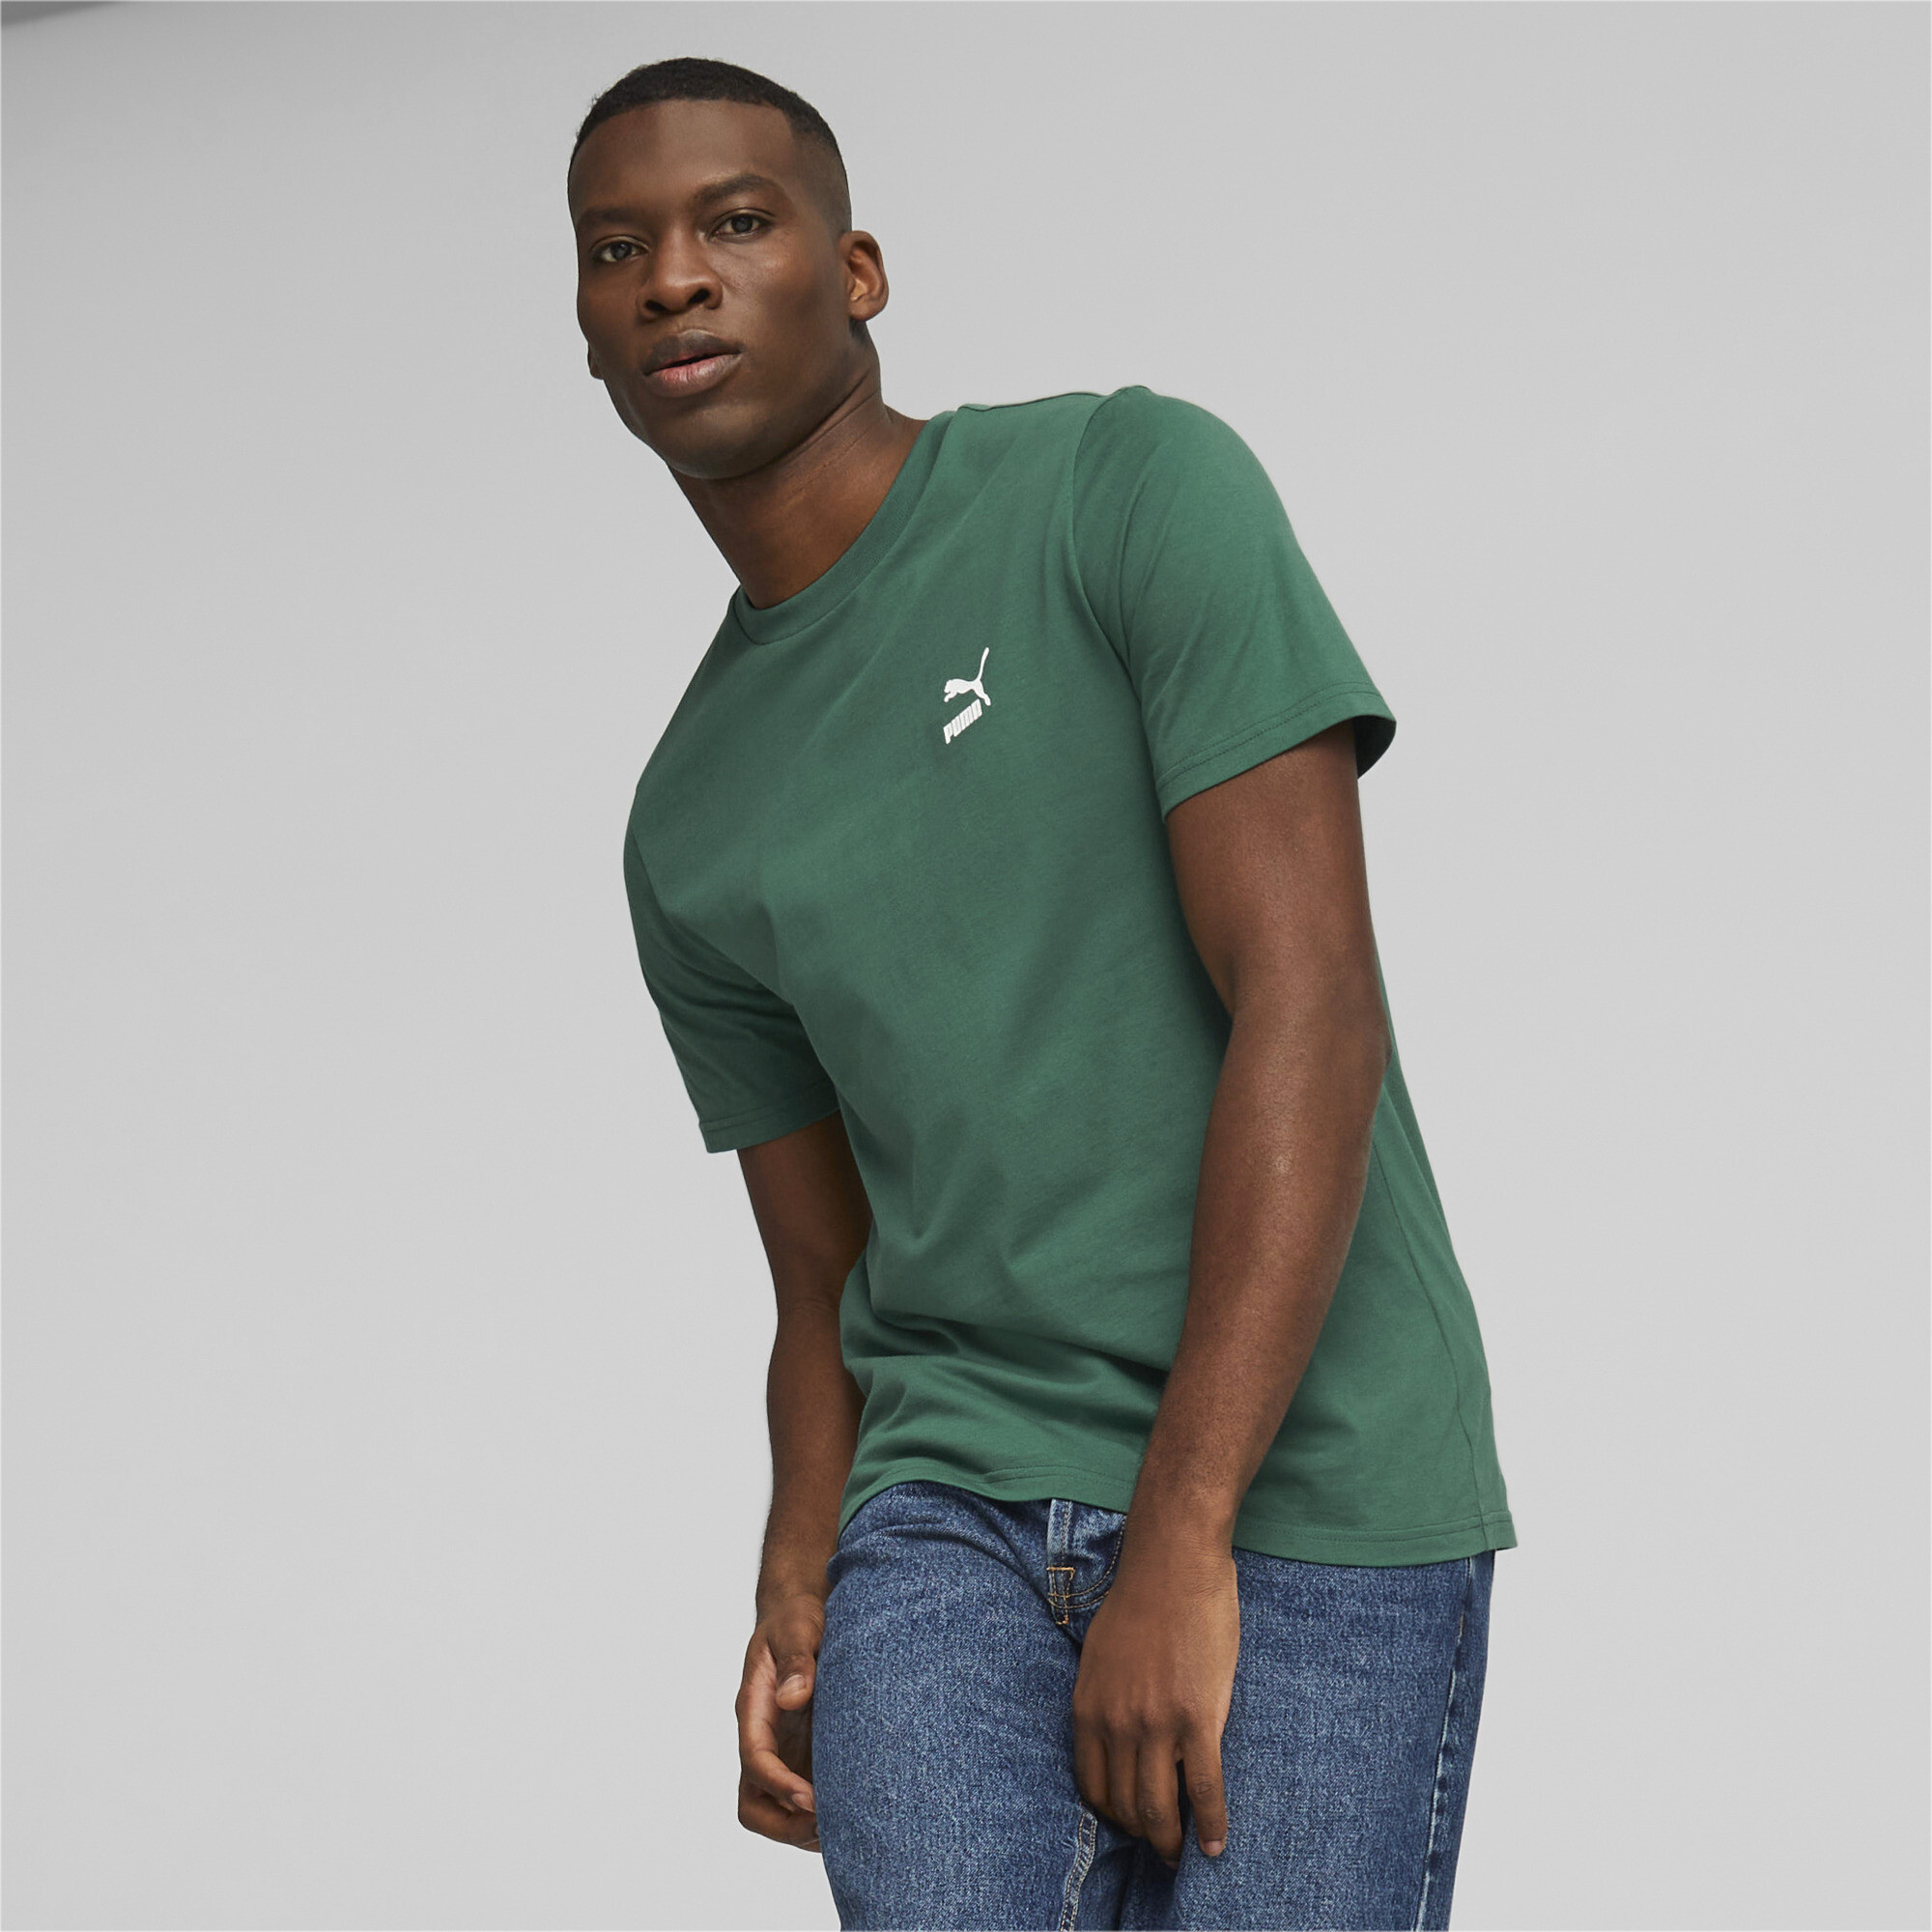 Men's PUMA Classics Small Logo T-Shirt Men In 40 - Green, Size 2XL